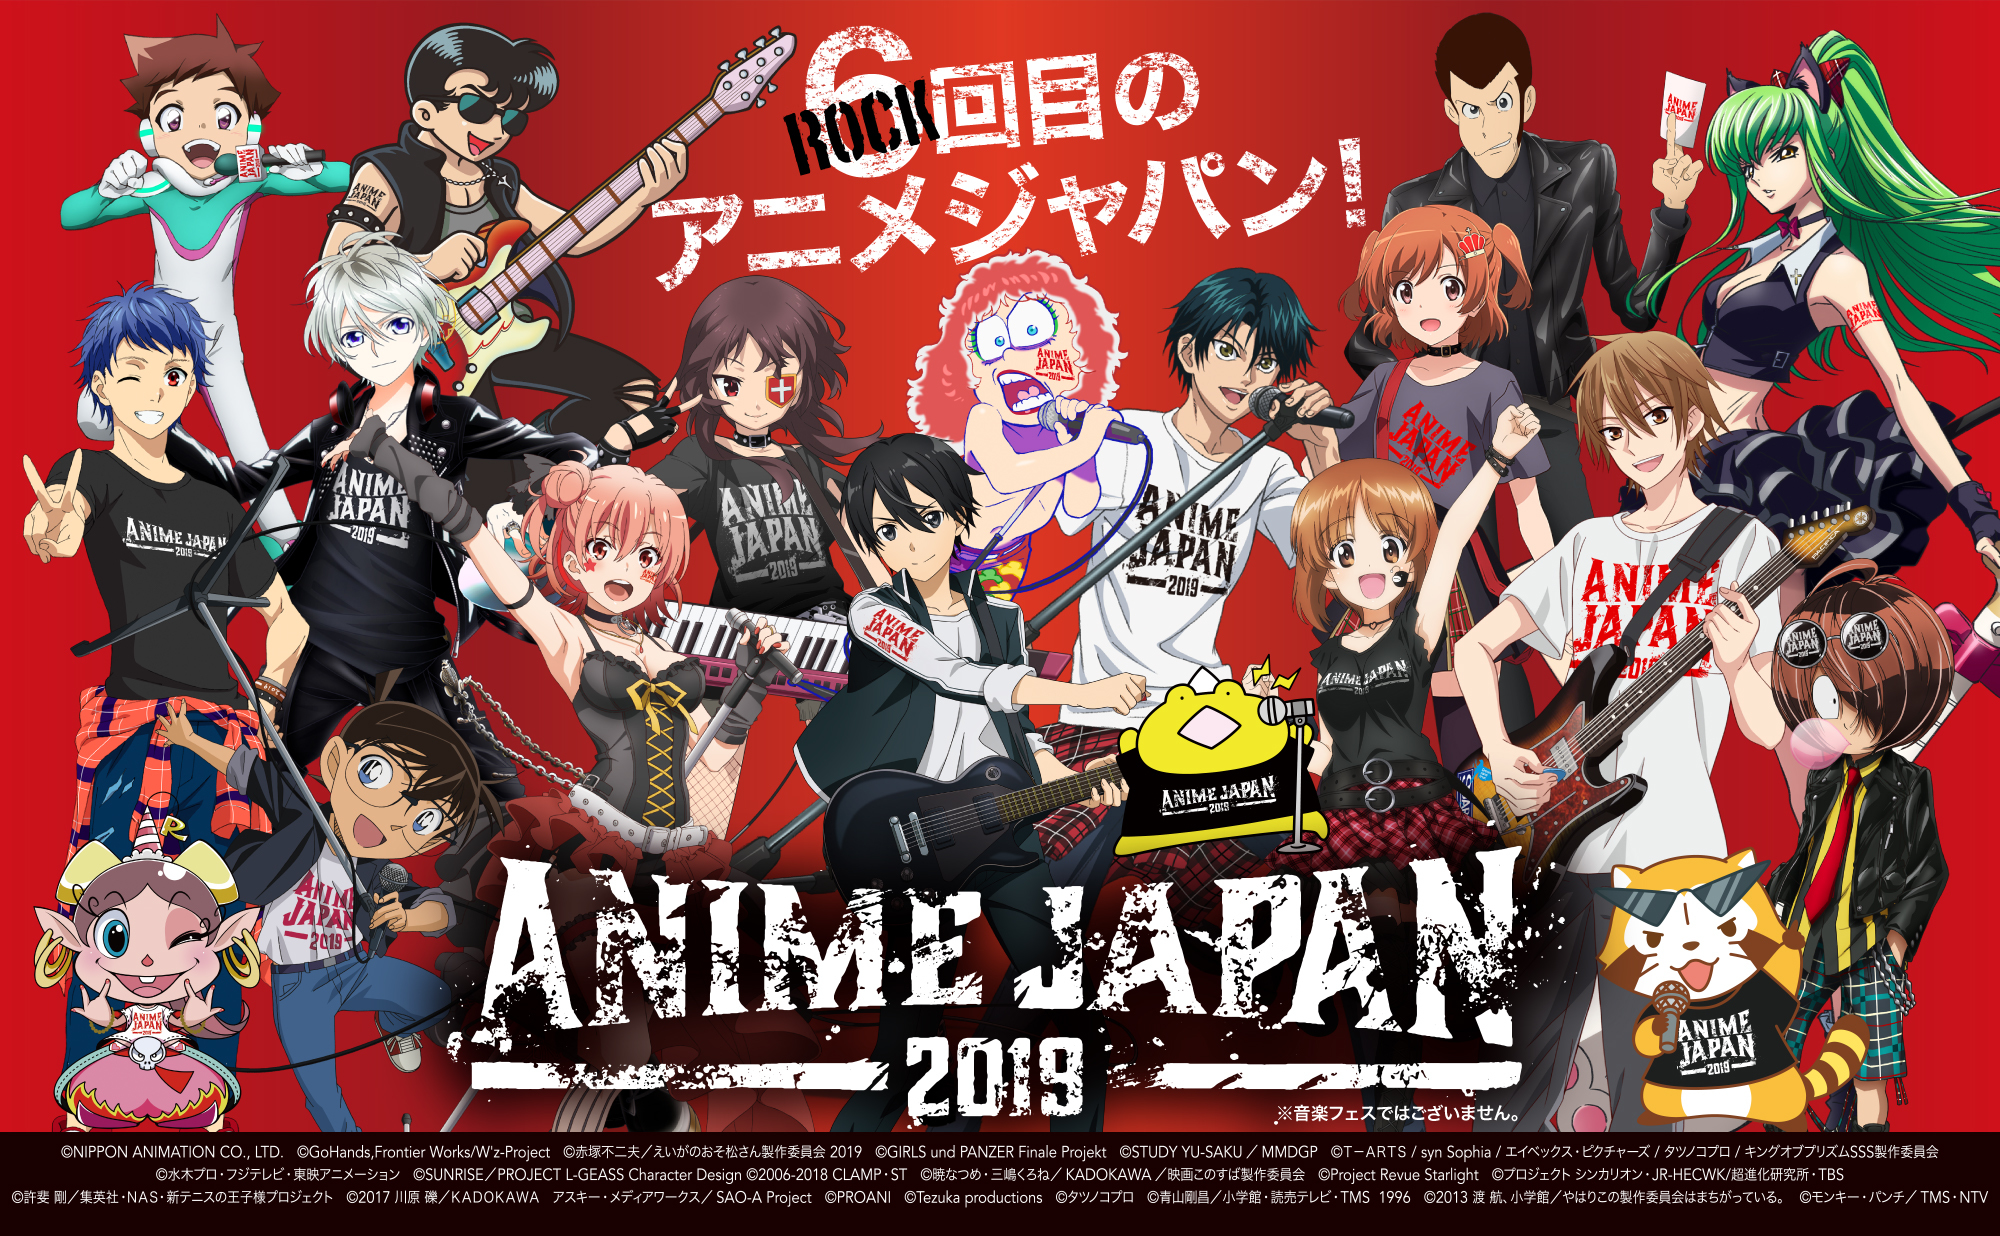 いよいよ今週末に迫ったAnimeJapan 2019！
出展ブース過去最多の163社1,040小間が集合！
アニメのすべてが、ここにある。
当日券、会場で販売！